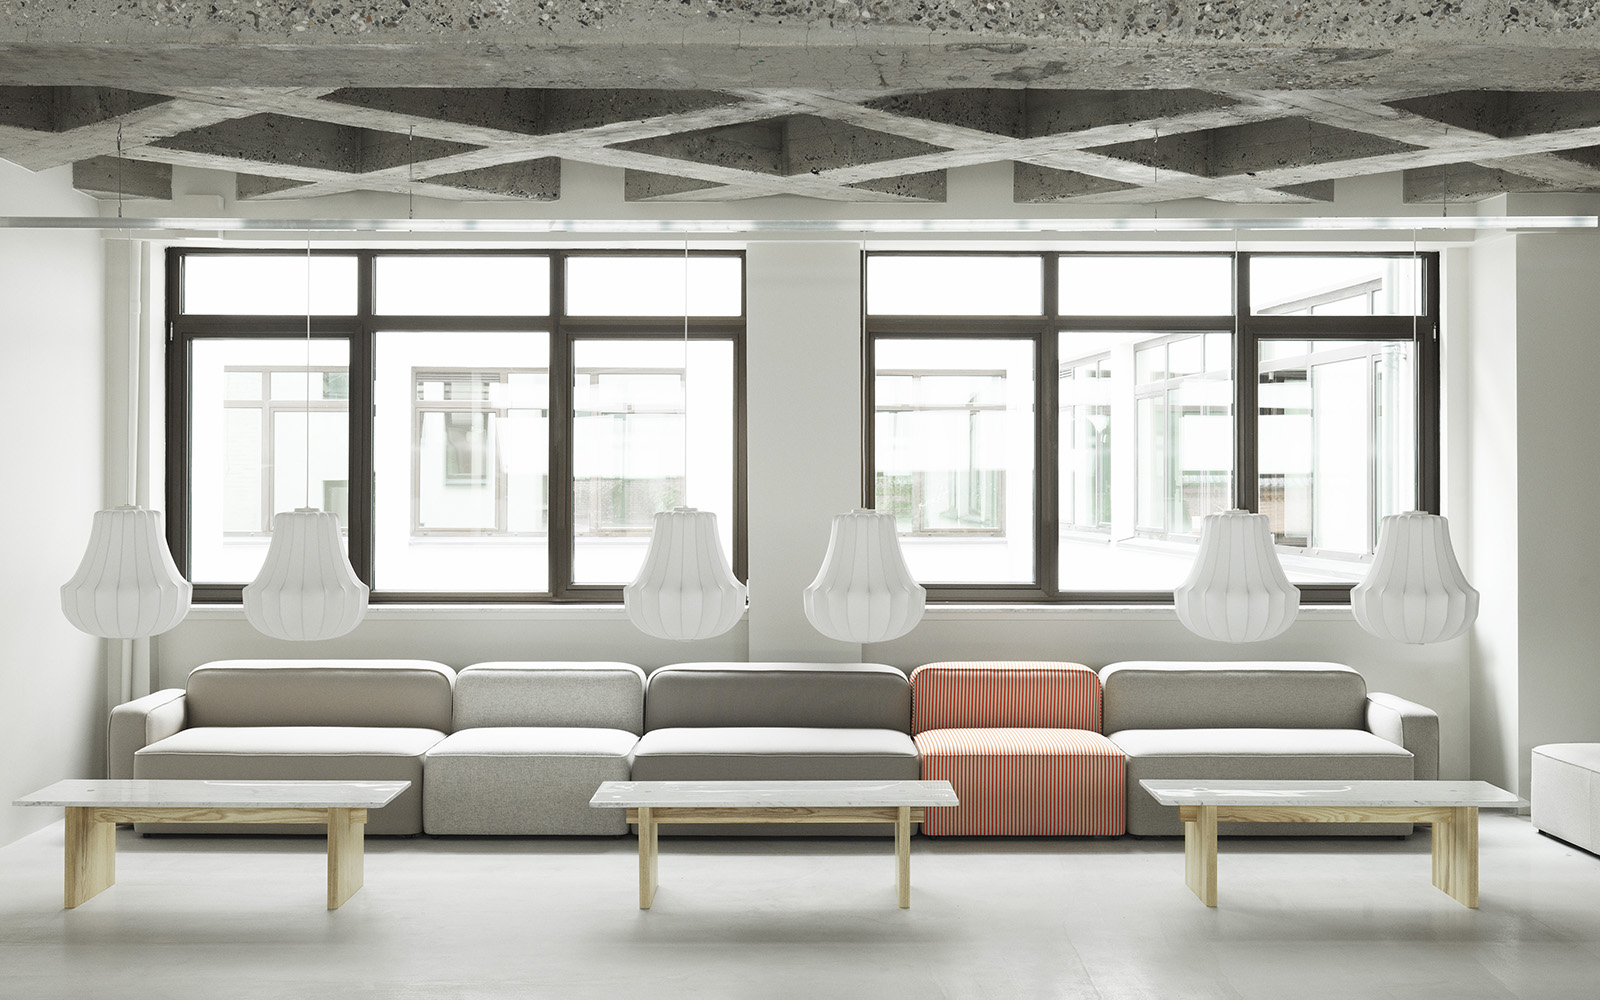 A collection of modern modular sofas